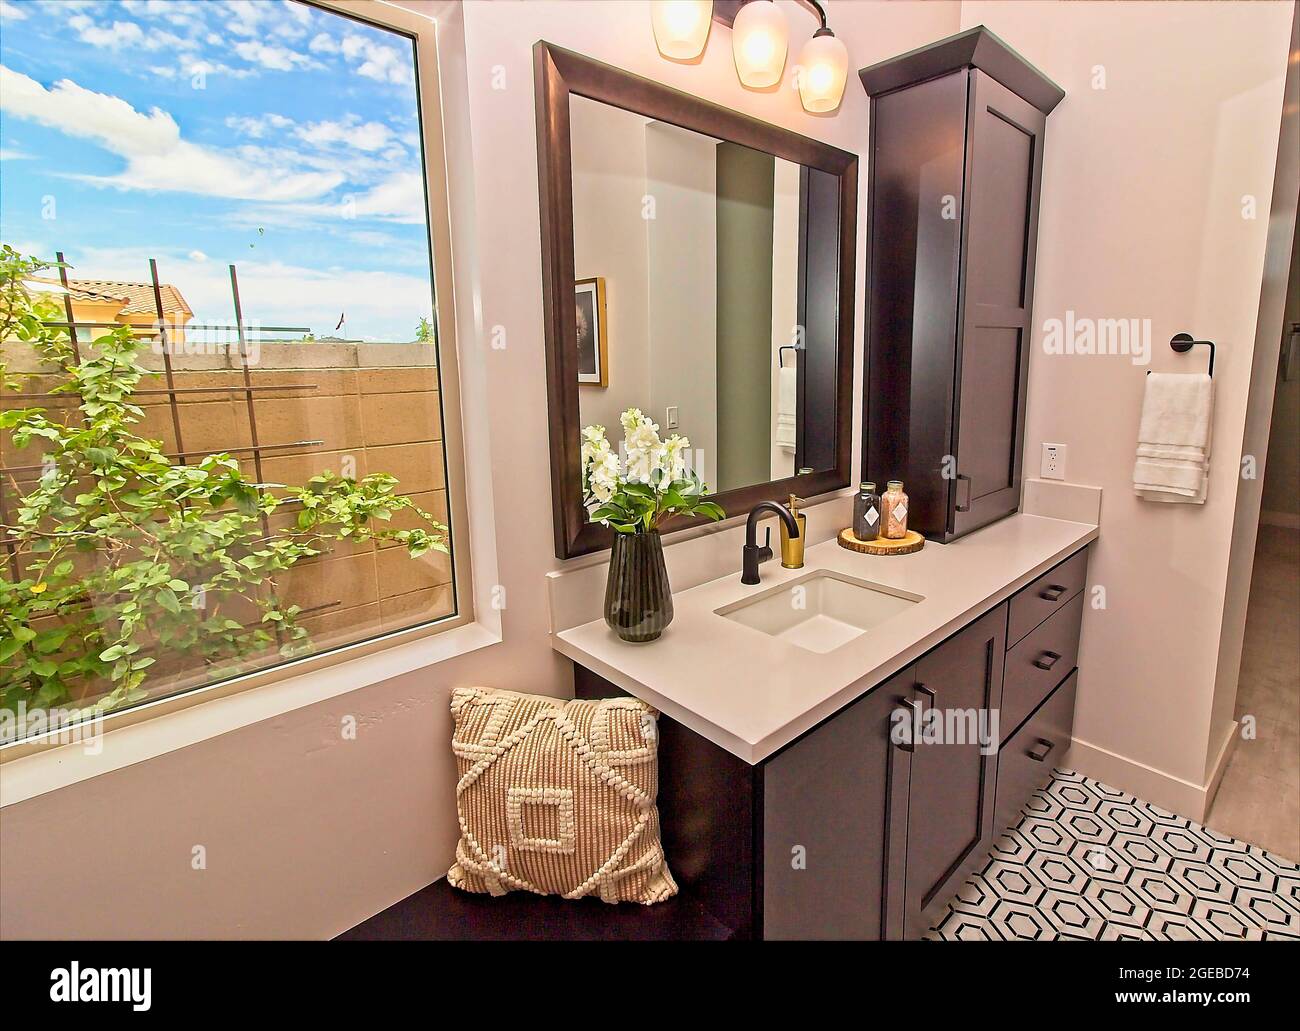 Salle de bains avec meuble-lavabo, armoires et miroir Banque D'Images